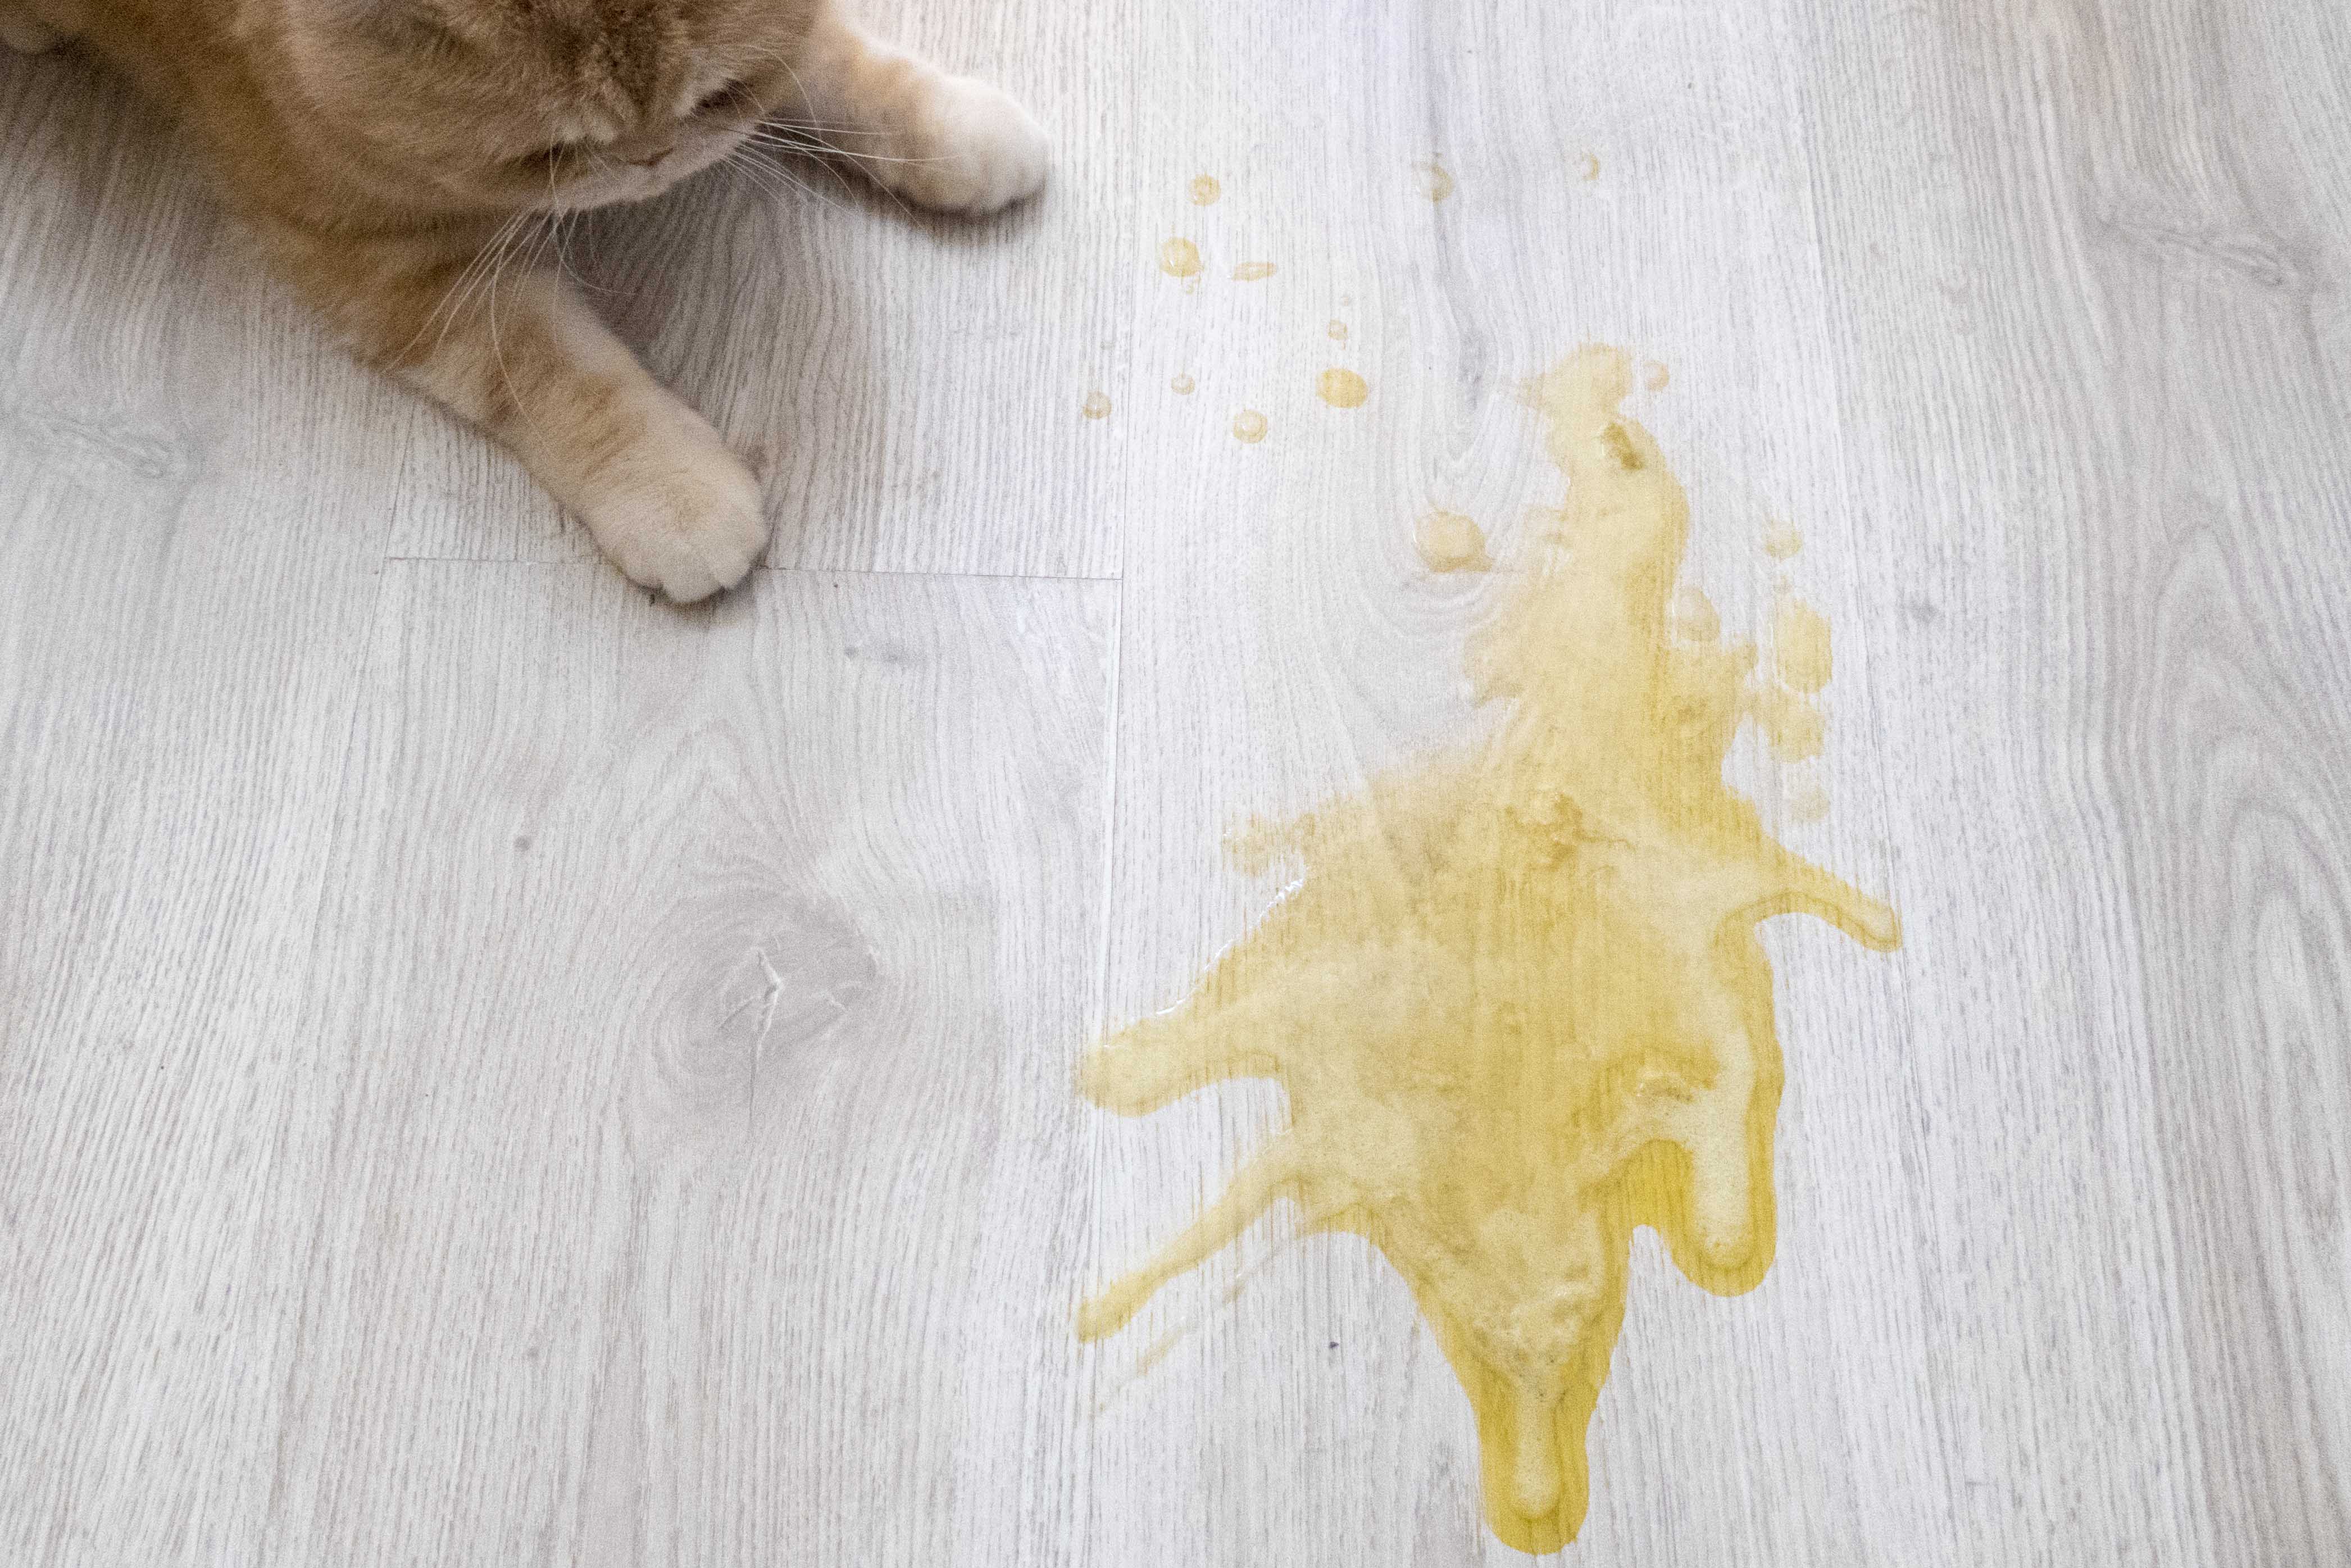 Кот рыгает жидкостью. Кот рыгнул желтой жидкостью. Кошку стошнило желтой жидкостью. Кошку вытошнило желтым.